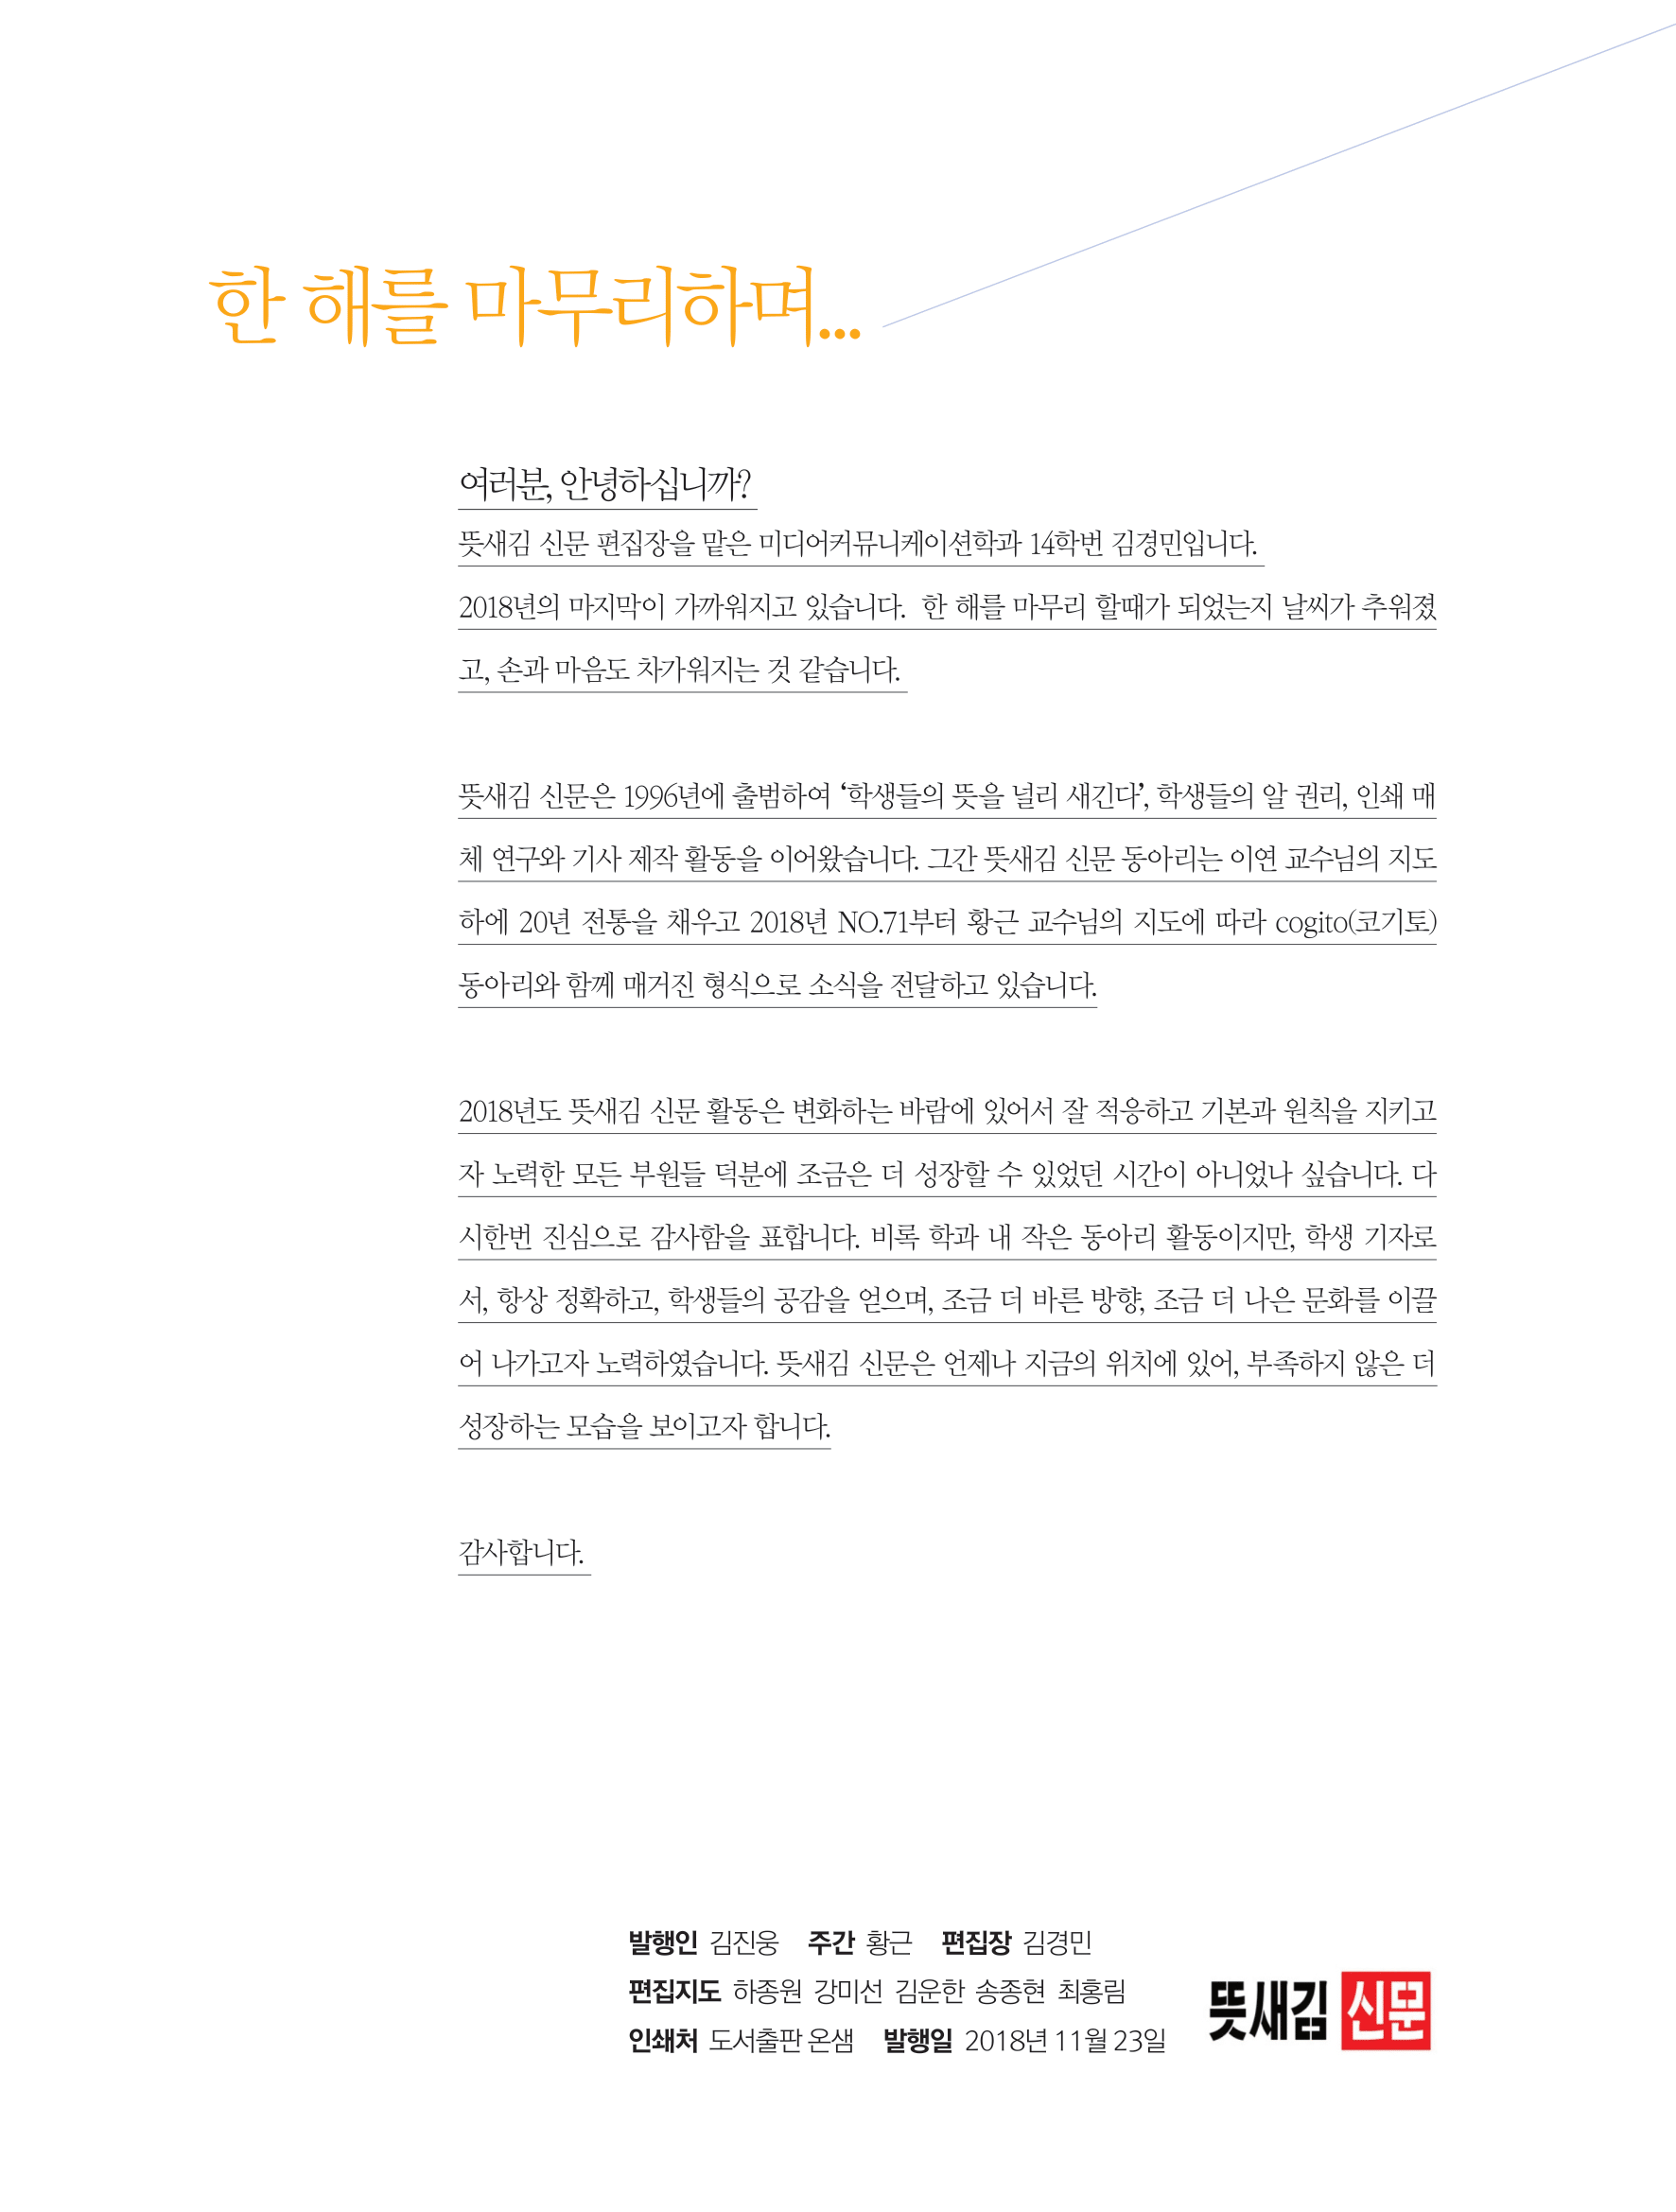 뜻새김 신문 72호 27